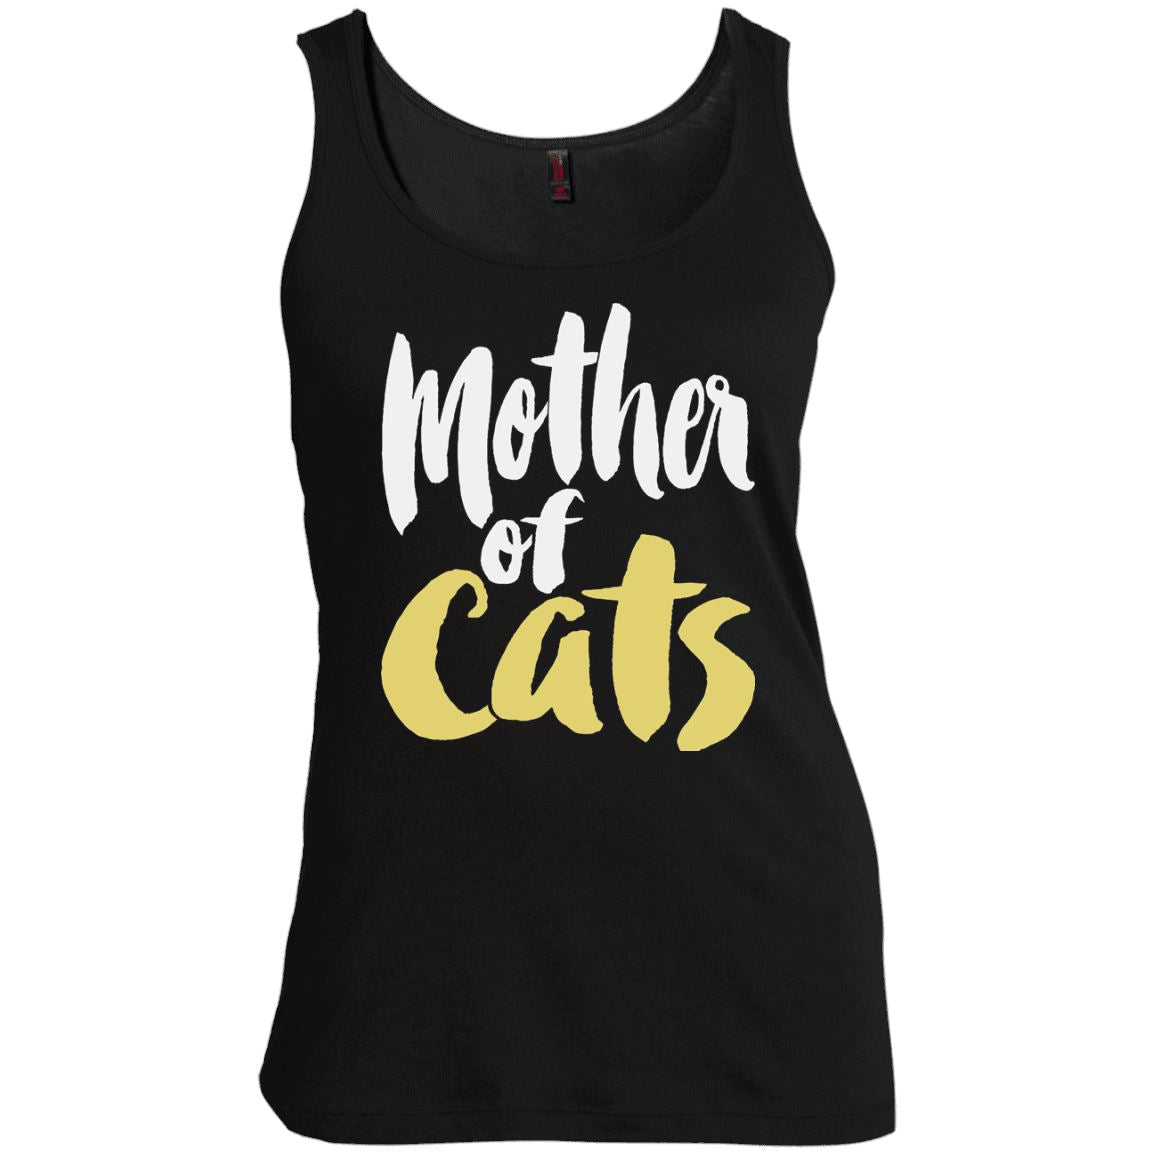 Cat Tee - Mother of Cats - CatsForLife